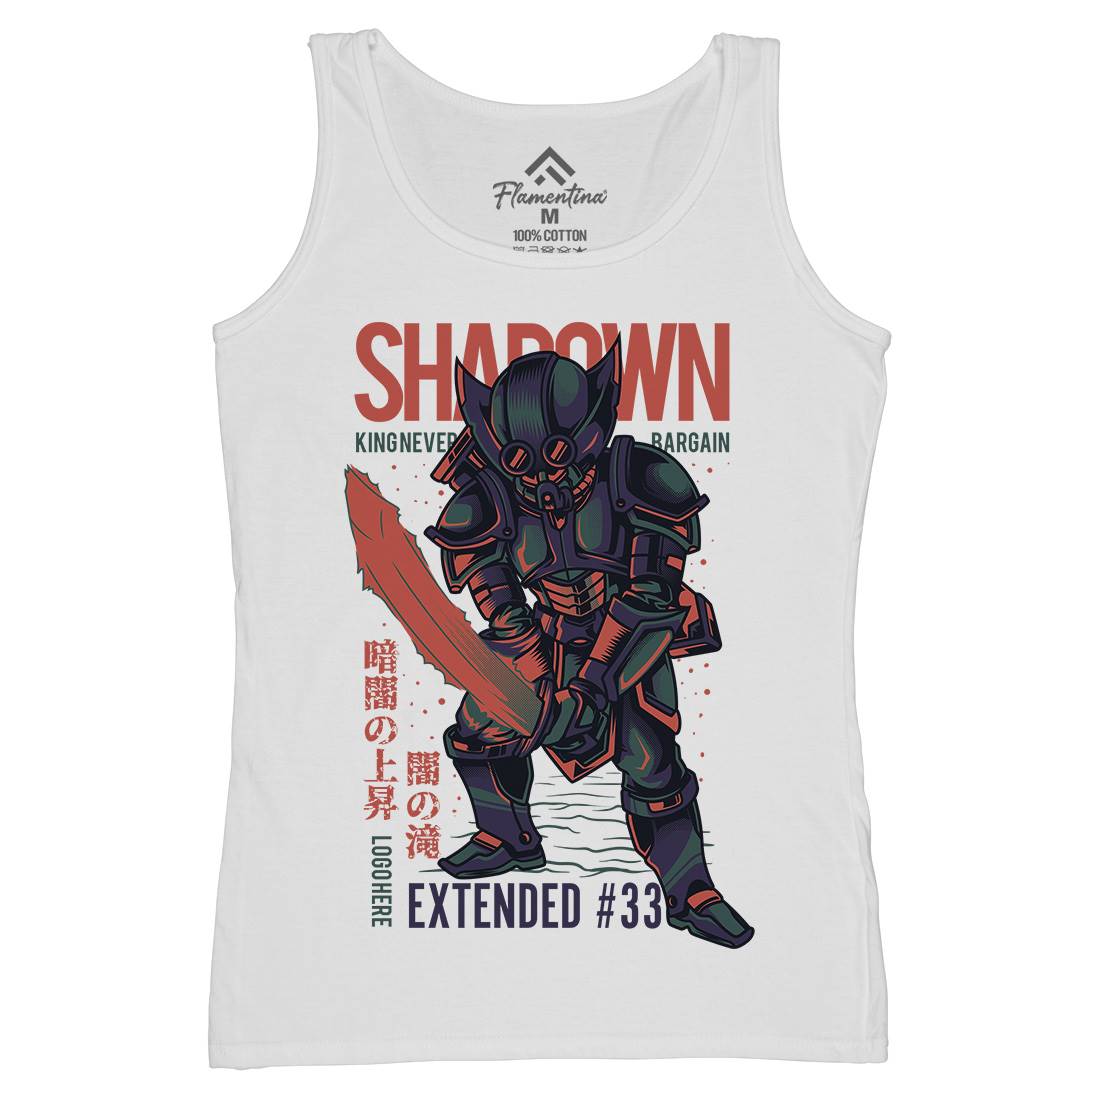 Shadown Knight Womens Organic Tank Top Vest Warriors D812